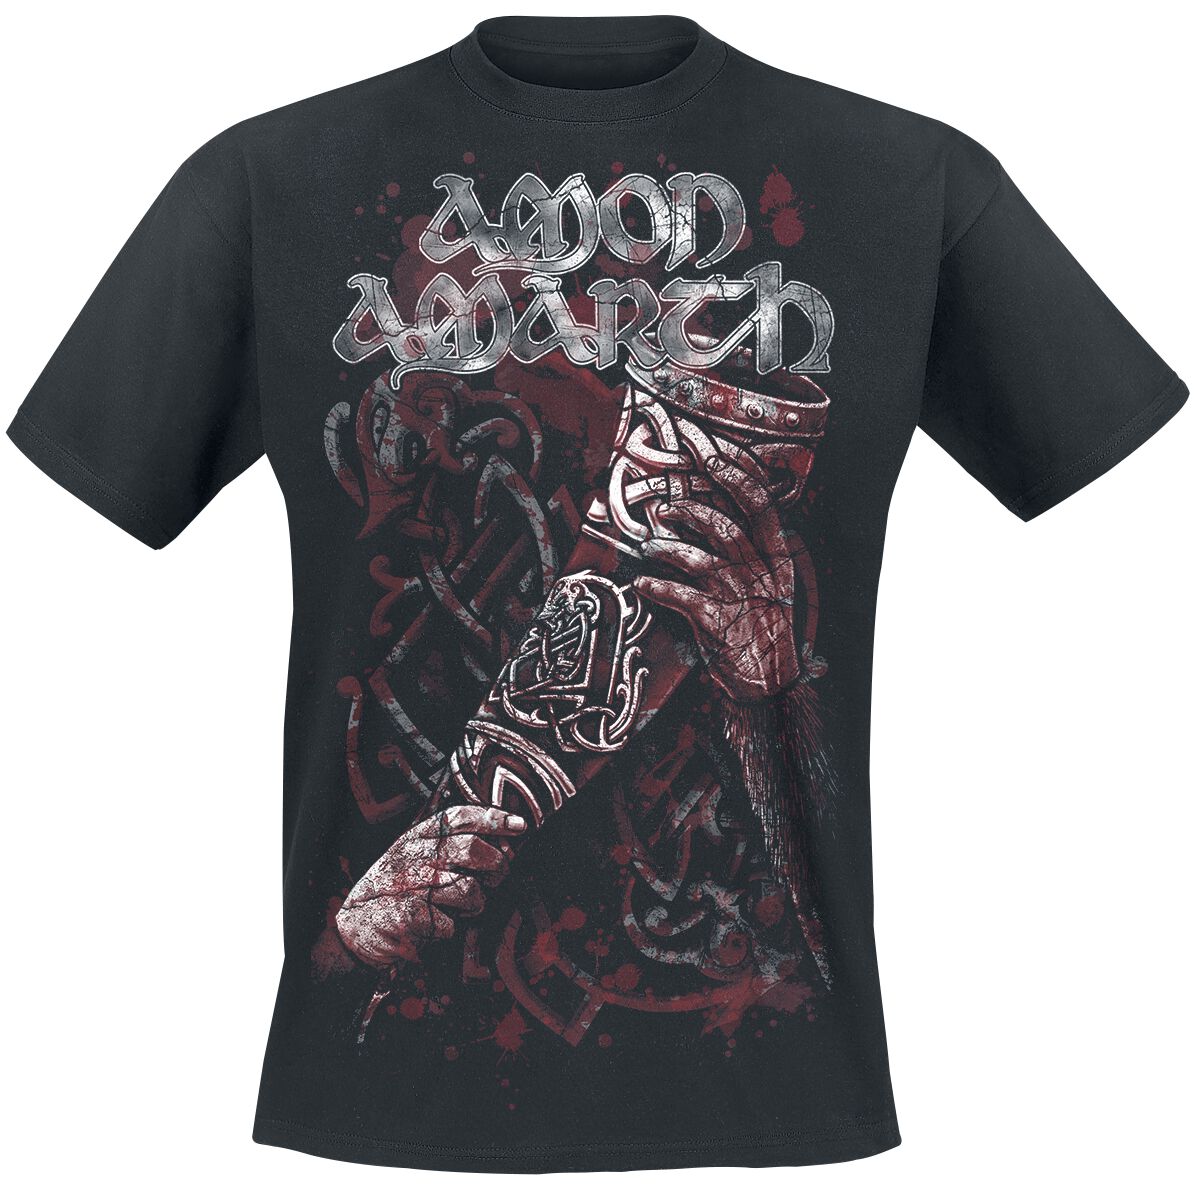 Amon Amarth T-Shirt - Raise Your Horns - S bis 5XL - für Männer - Größe S - schwarz  - Lizenziertes Merchandise!